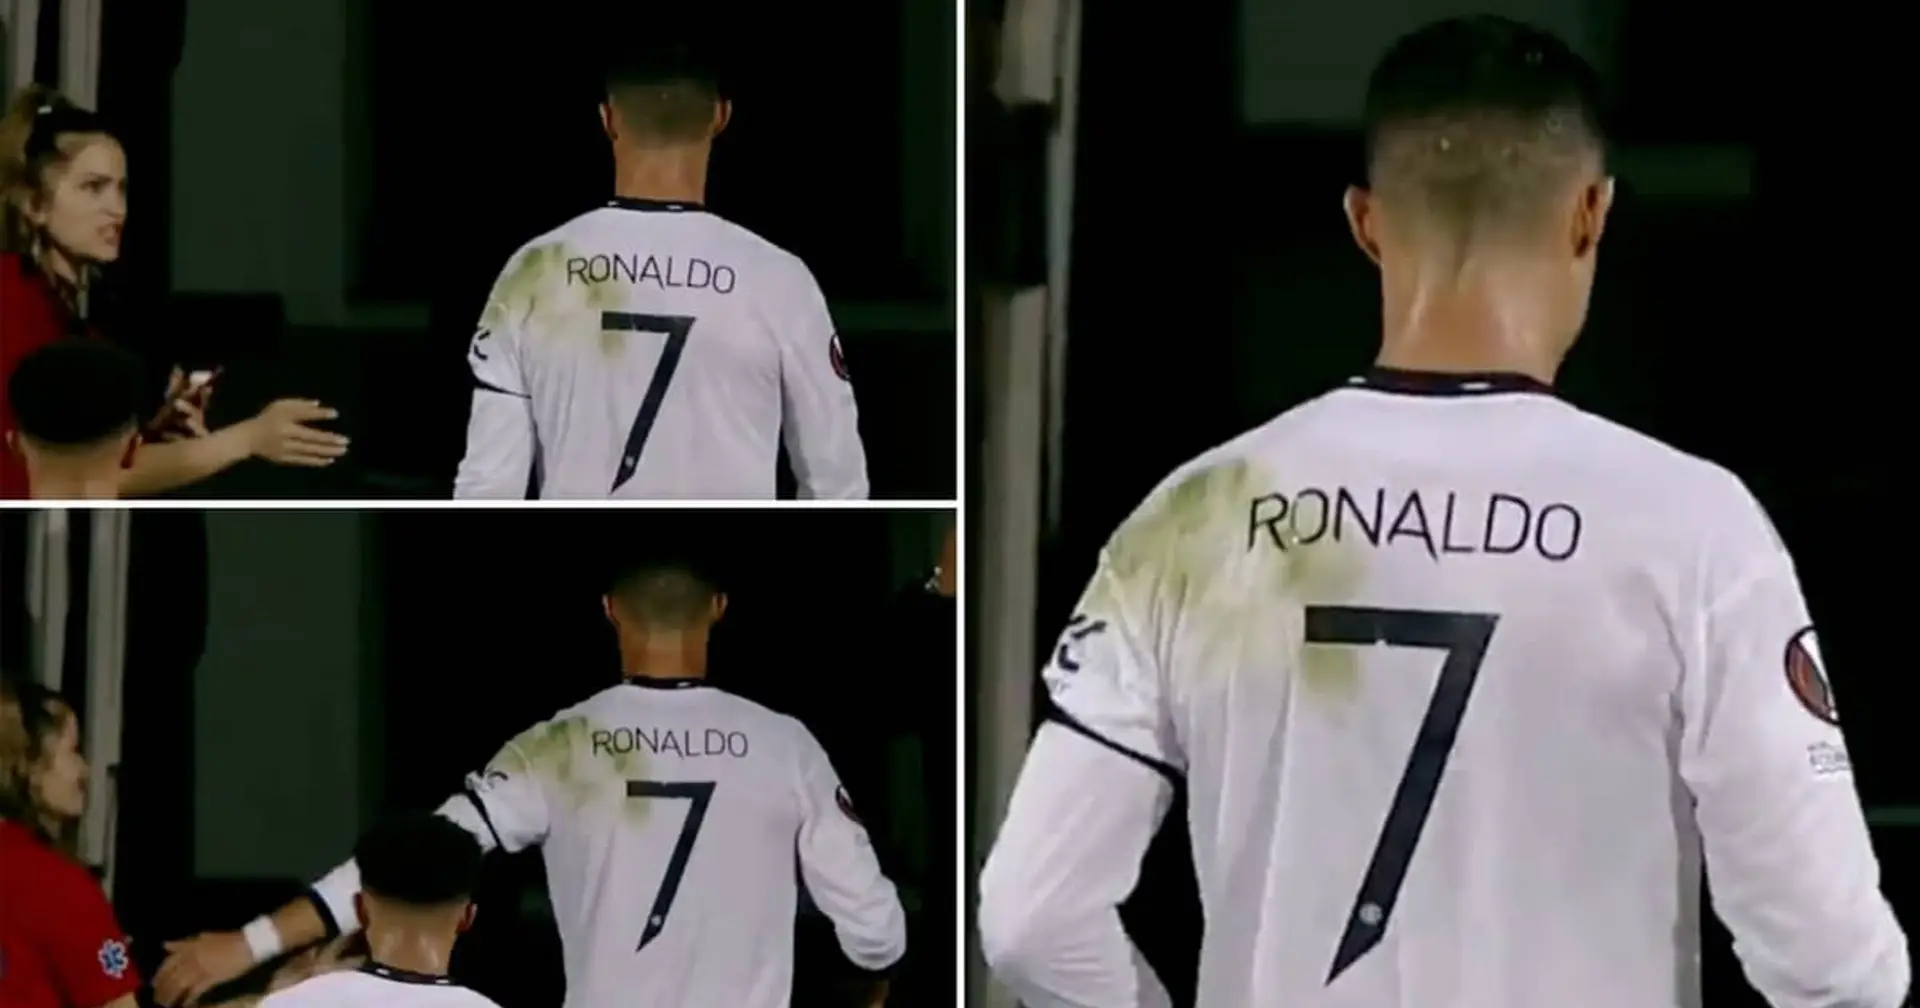 Cristiano Ronaldo weigert sich, ein Foto mit Fan während des UEL-Spiels zu machen: Video wird viral